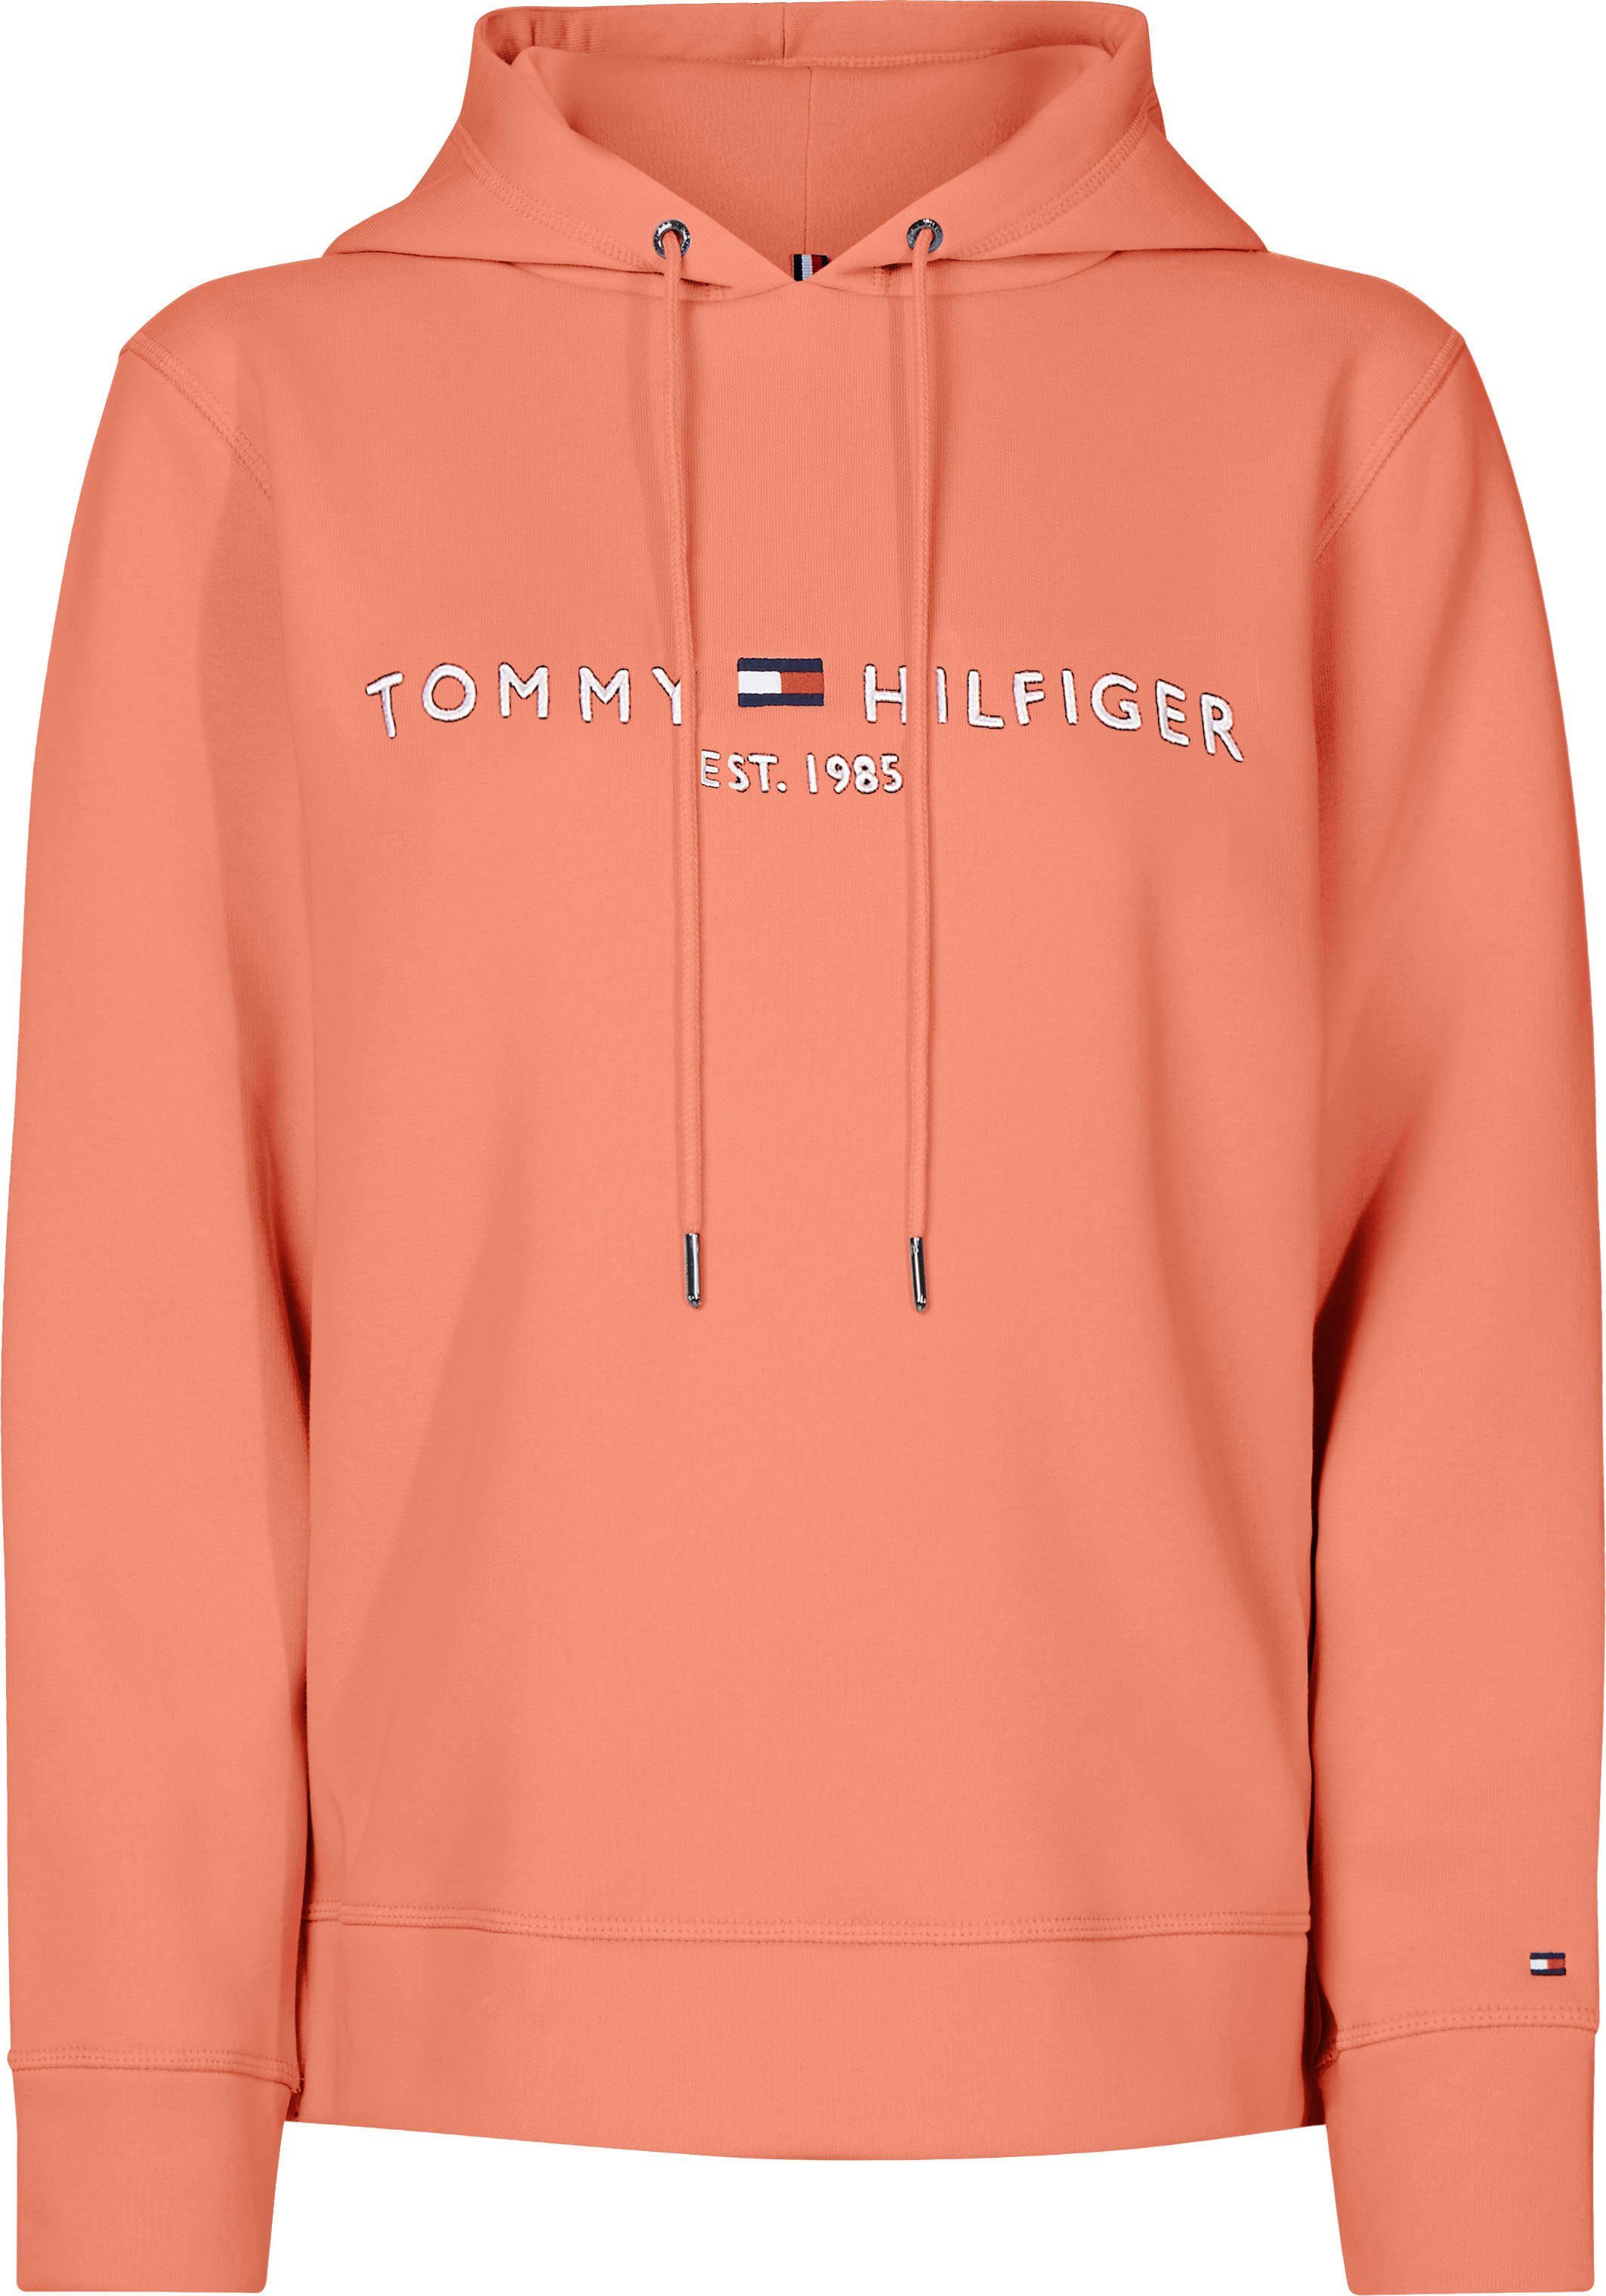 Tommy Hilfiger Damenmode & Damen-Bekleidung online kaufen | OTTO